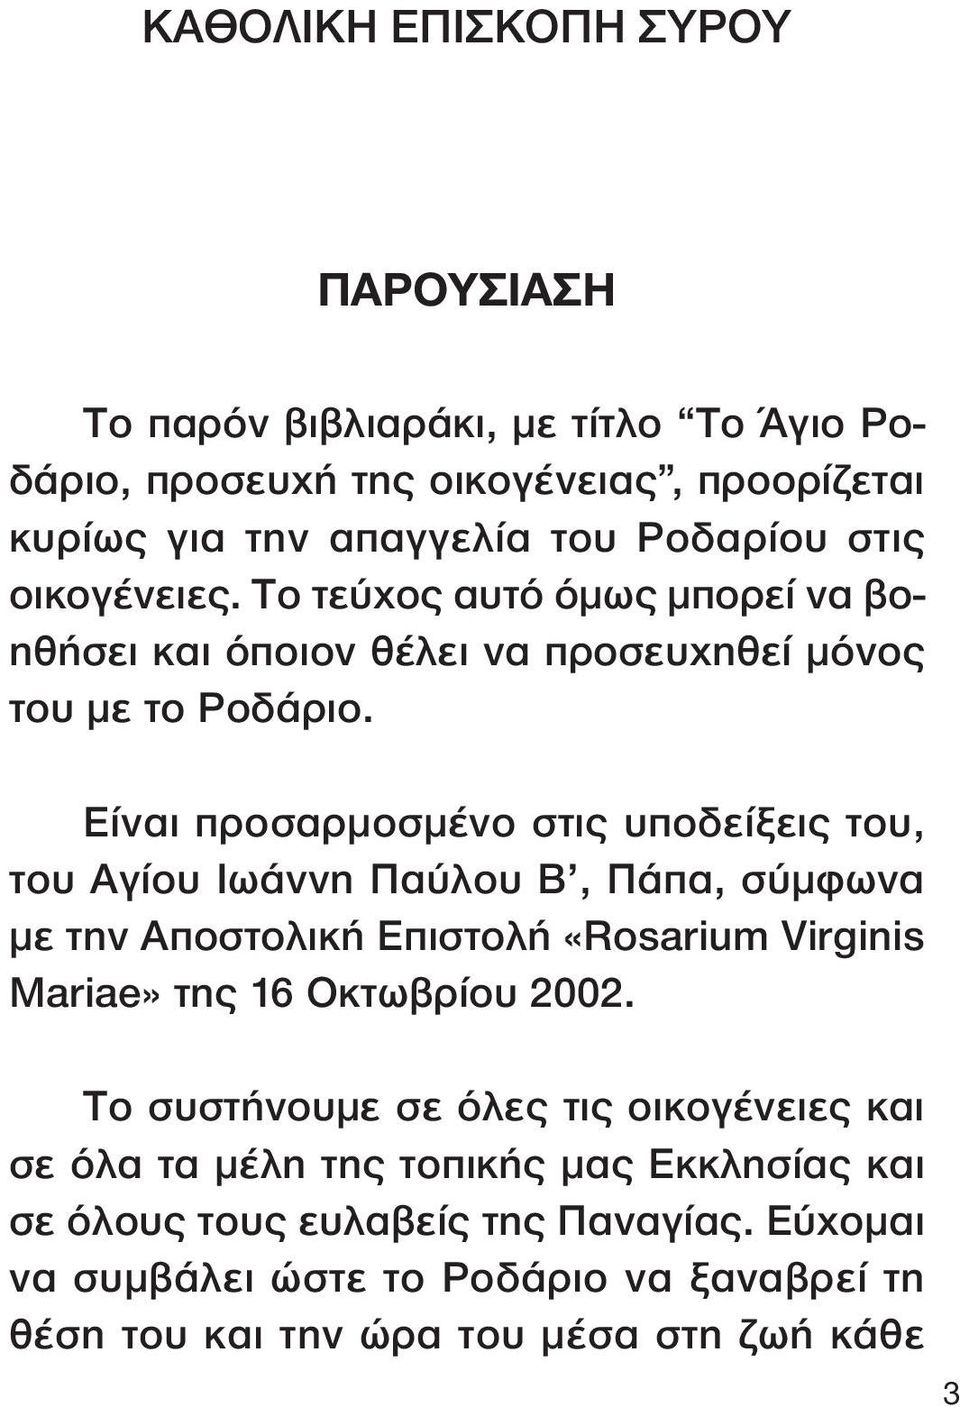 Είναι προσαρµοσµένο στις υποδείξεις του, του Αγίου Ιωάννη Παύλου Β, Πάπα, σύµφωνα µε την Αποστολική Επιστολή «Rosarium Virginis Mariae» της 16 Οκτωβρίου 2002.